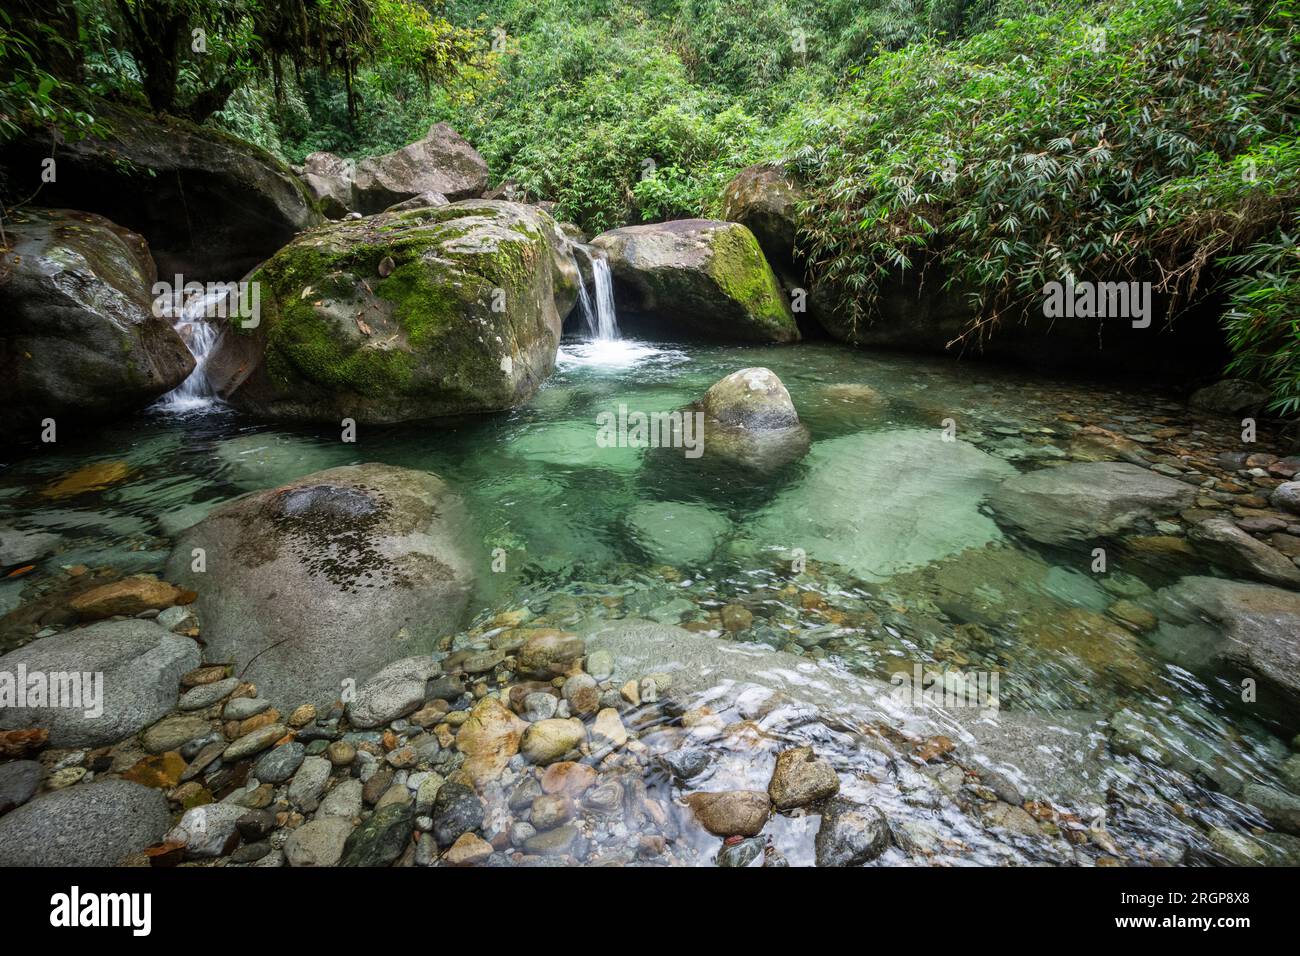 Belle vue sur la piscine d'eau cristalline de la forêt tropicale verte Banque D'Images